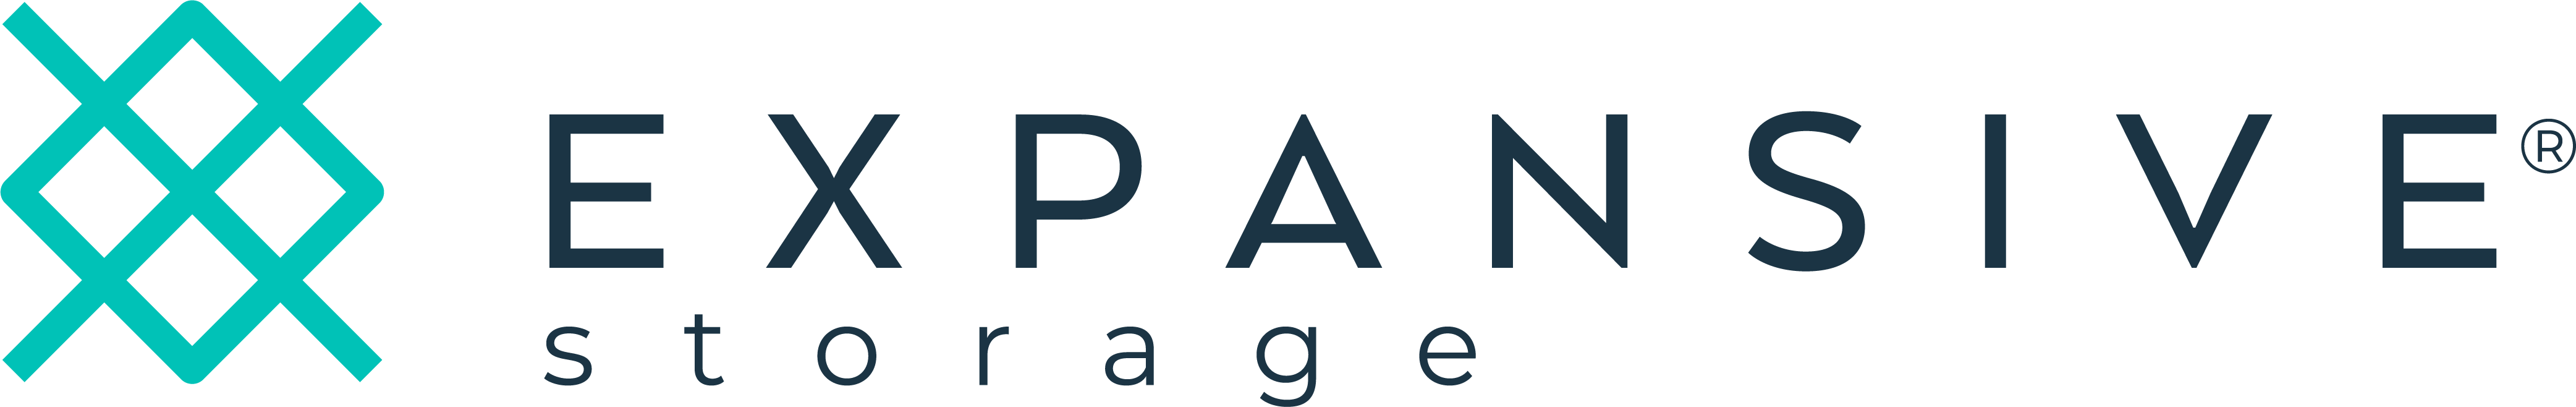 Expansive Storage logo